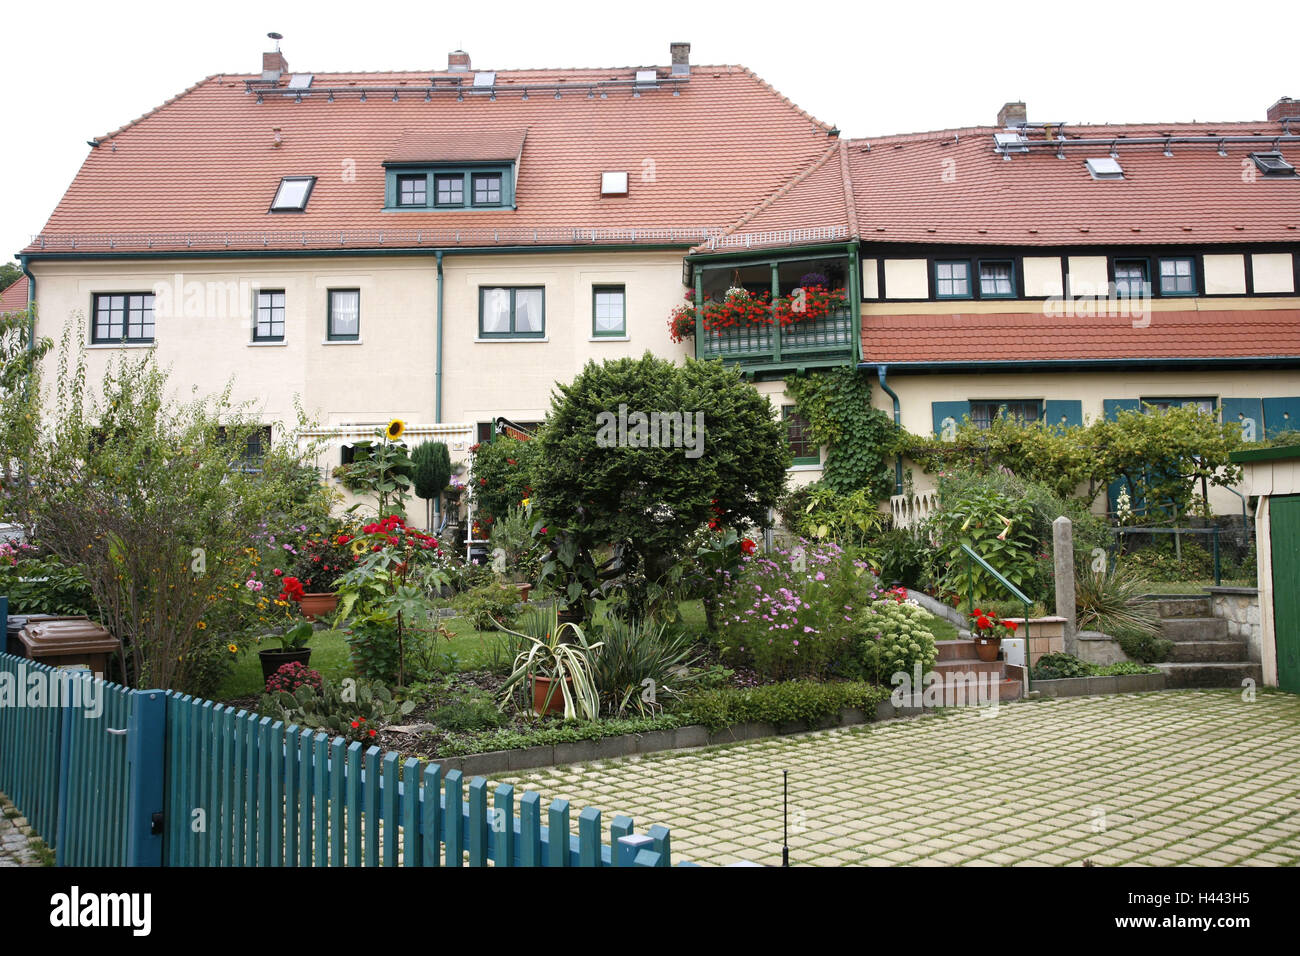 In Germania, in Sassonia, Dresda, in direzione di Hellerau;, garden city, case e giardini, Foto Stock